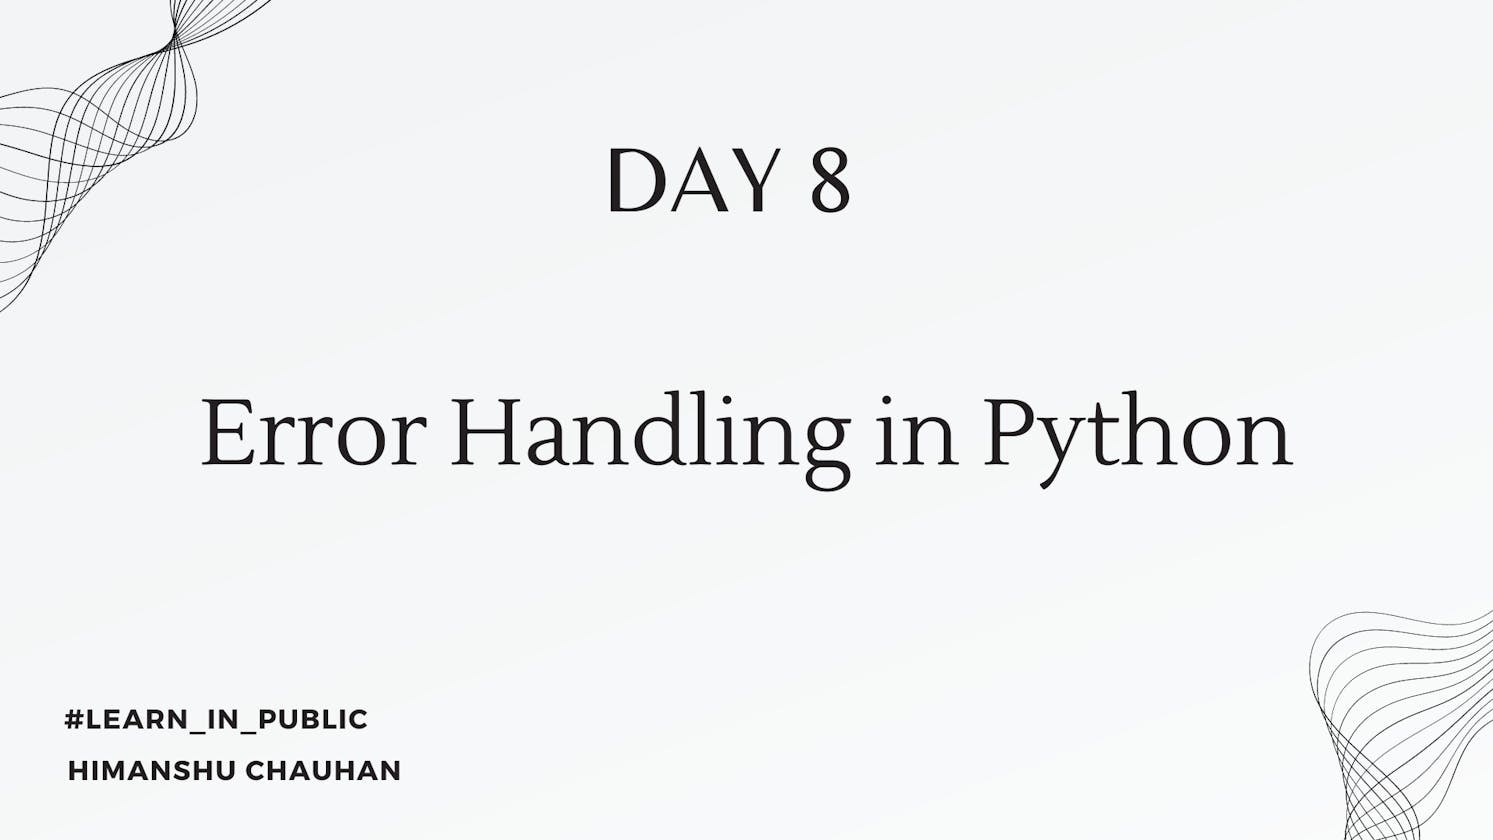 Day 8: Error Handling in Python